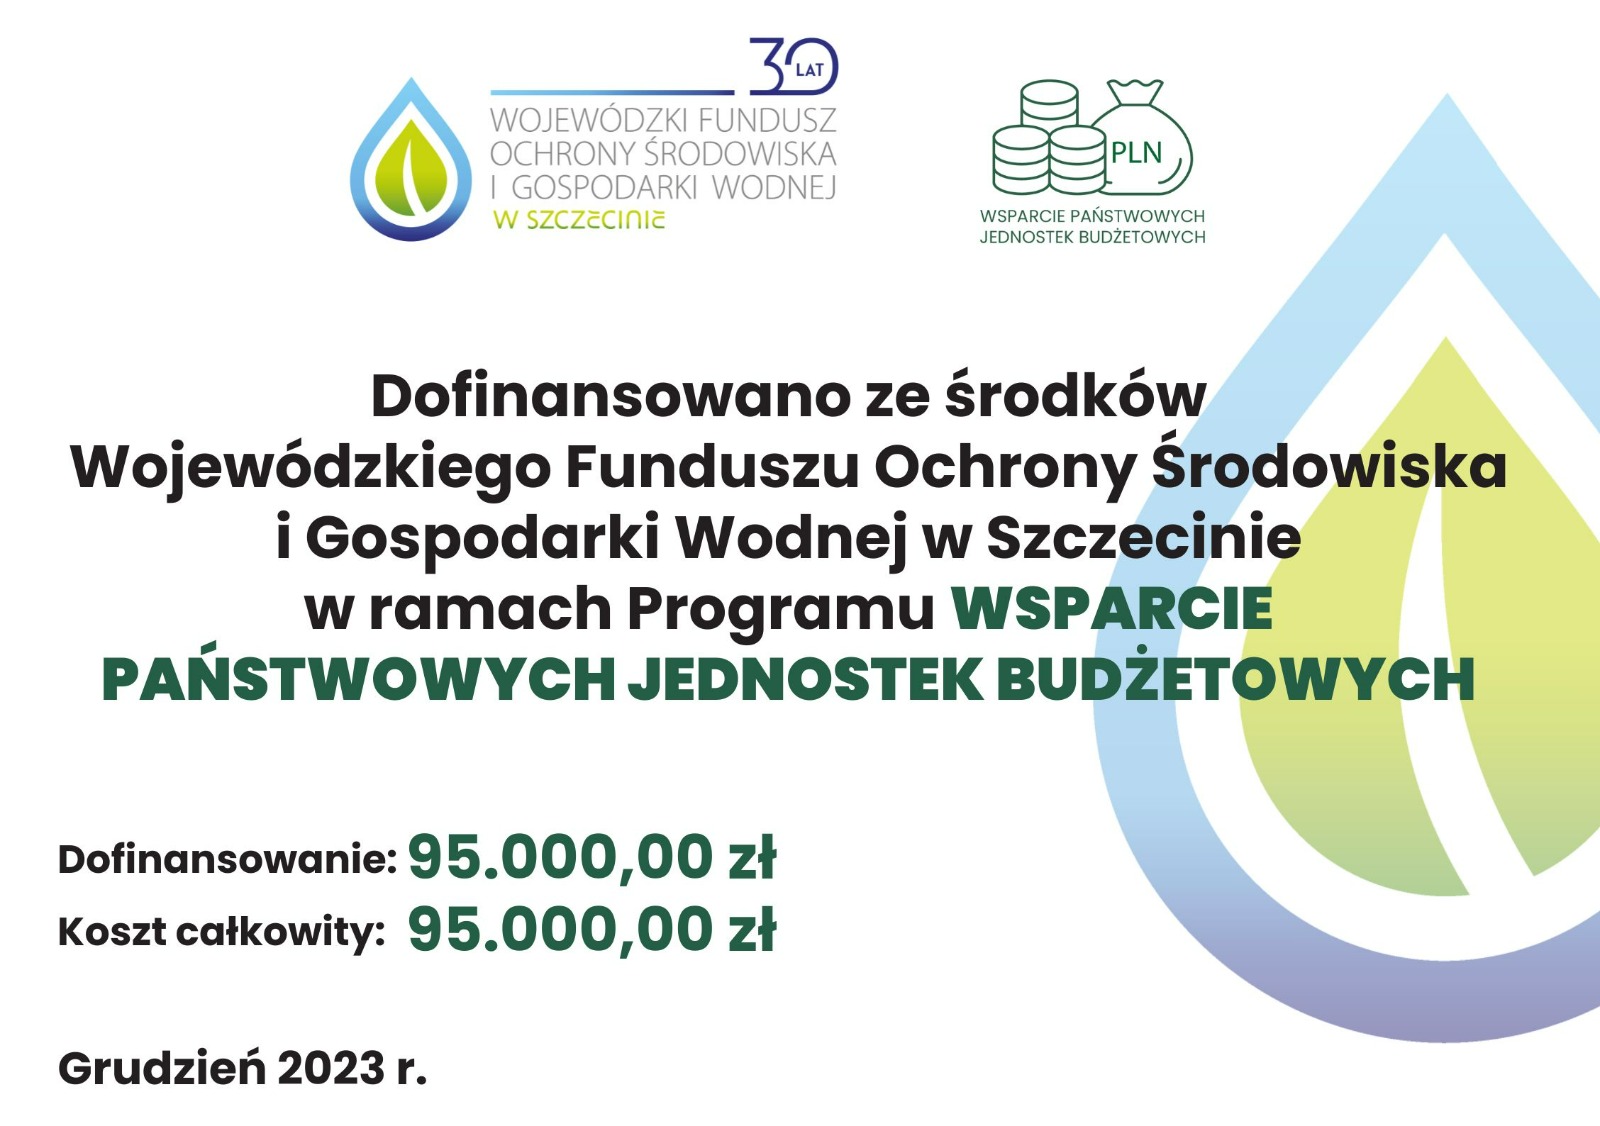 Grafika wskazująca tytuł projektu dofinansowanego z WFOŚiGW w Szczecinie wraz z jego wartością i miesiącem podpisania umowy